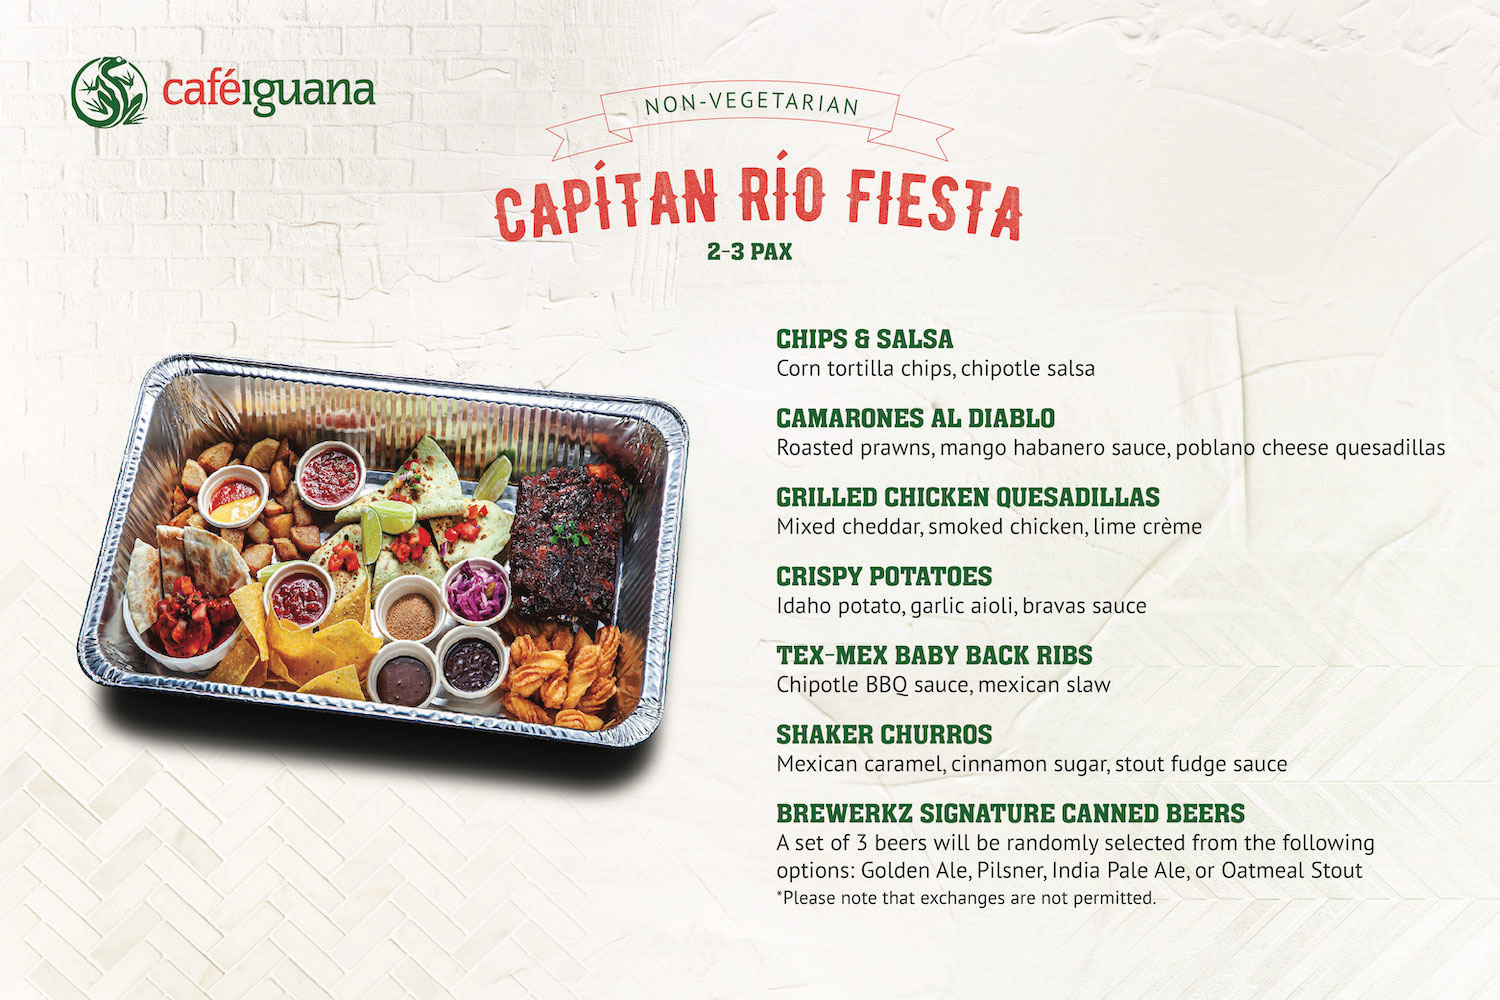 Captain Rio Fiesta